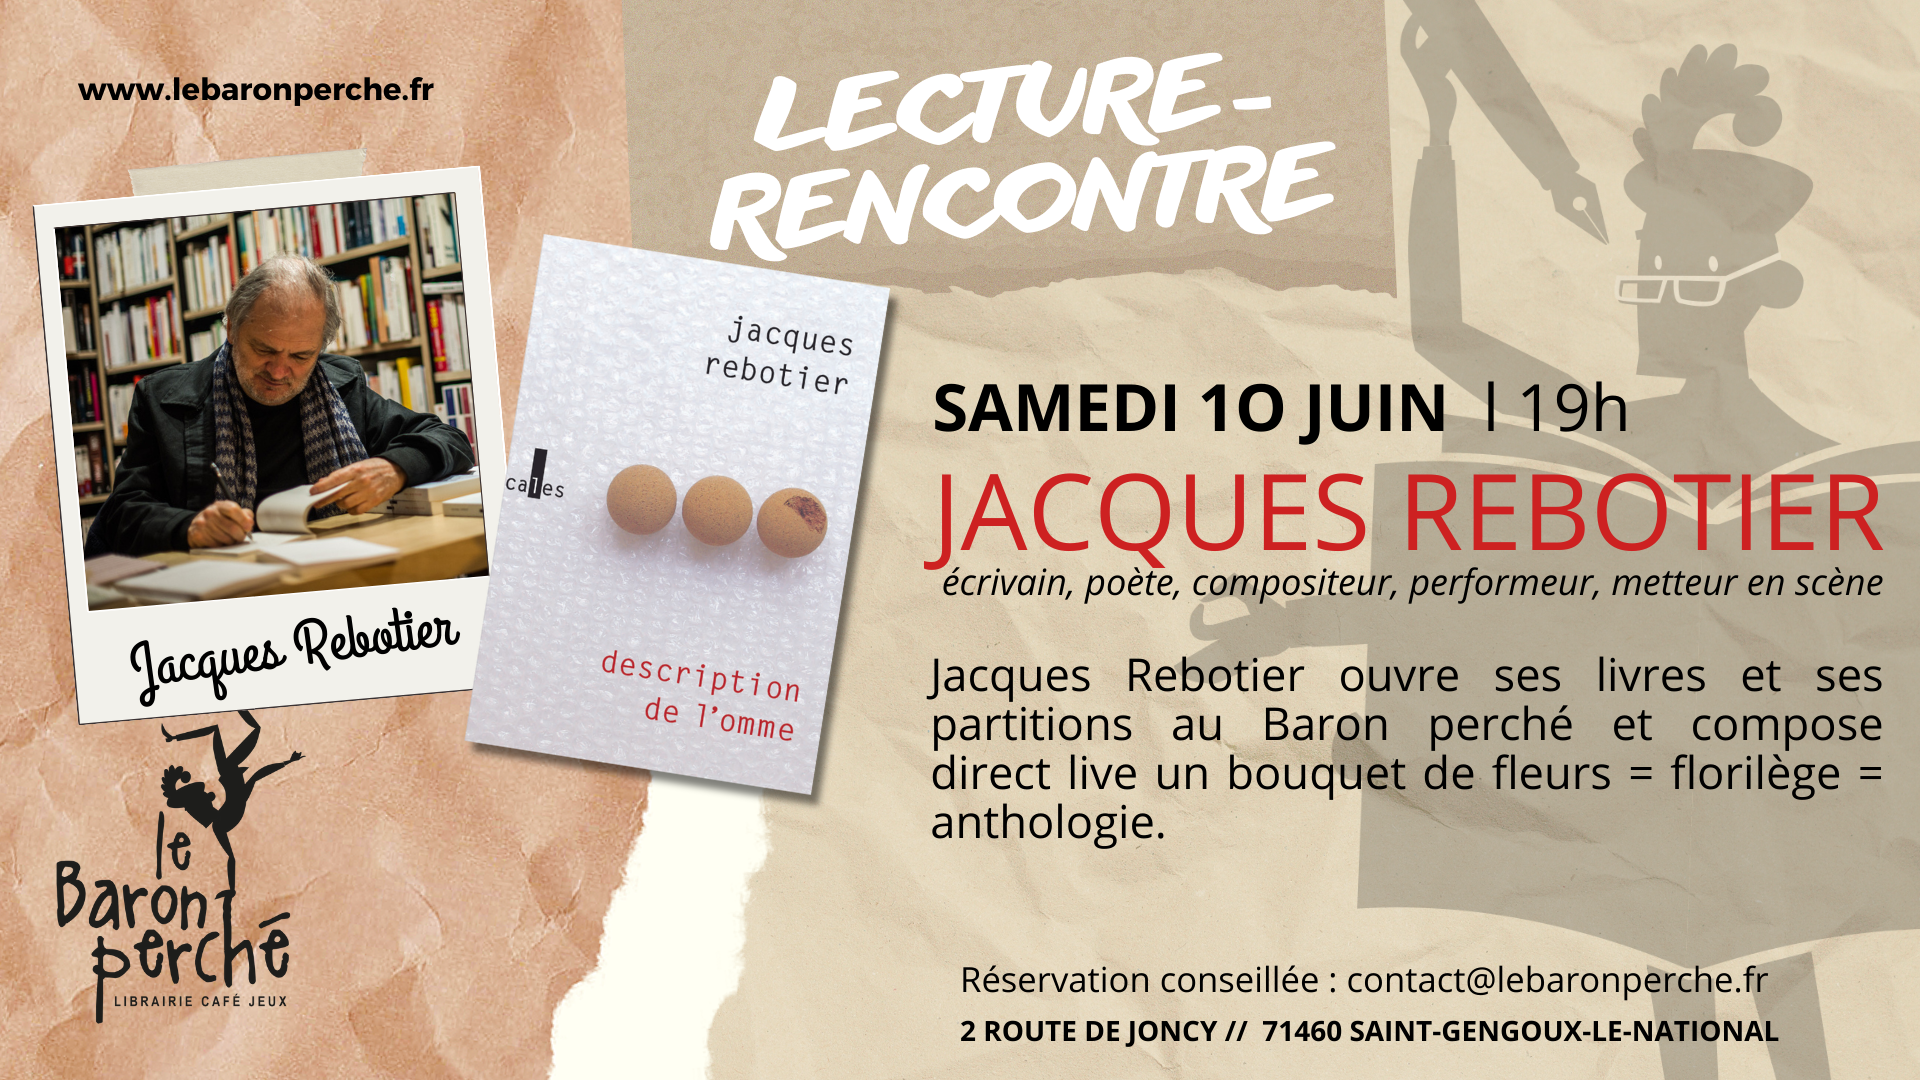 Lecture-rencontre avec Jacques Rebotier